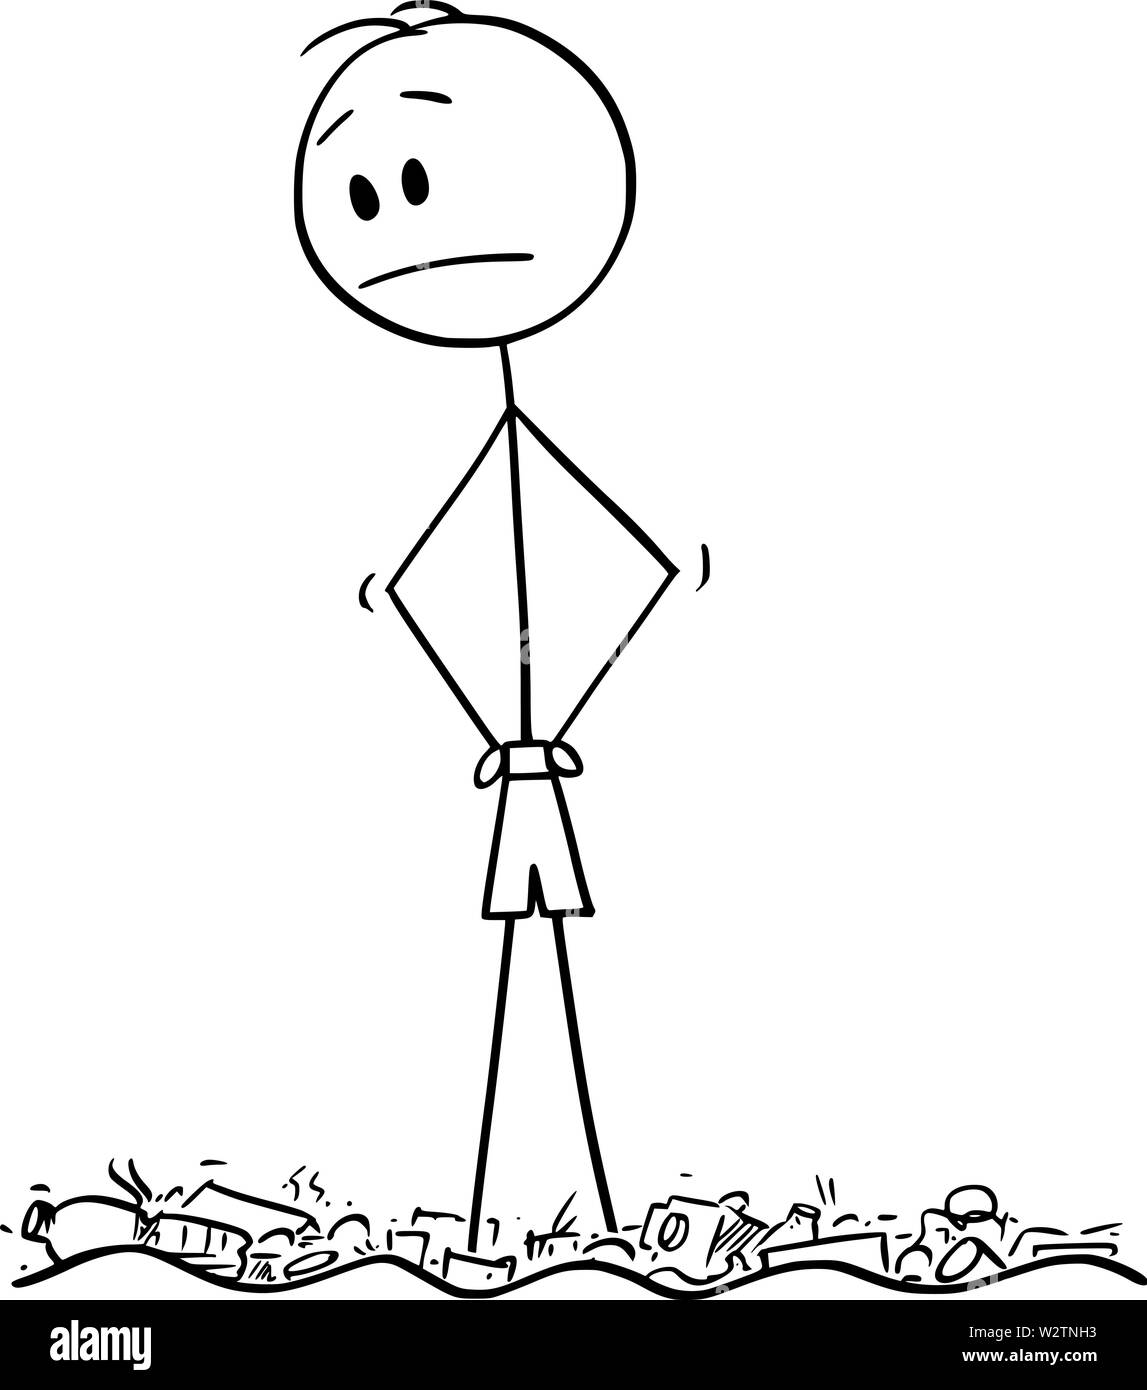 Vektor cartoon Strichmännchen Zeichnen konzeptionelle Darstellung der Mann oder touristische Ständigen id verschmutzter verschmutzte Wasser voller plastik Müll. Stock Vektor